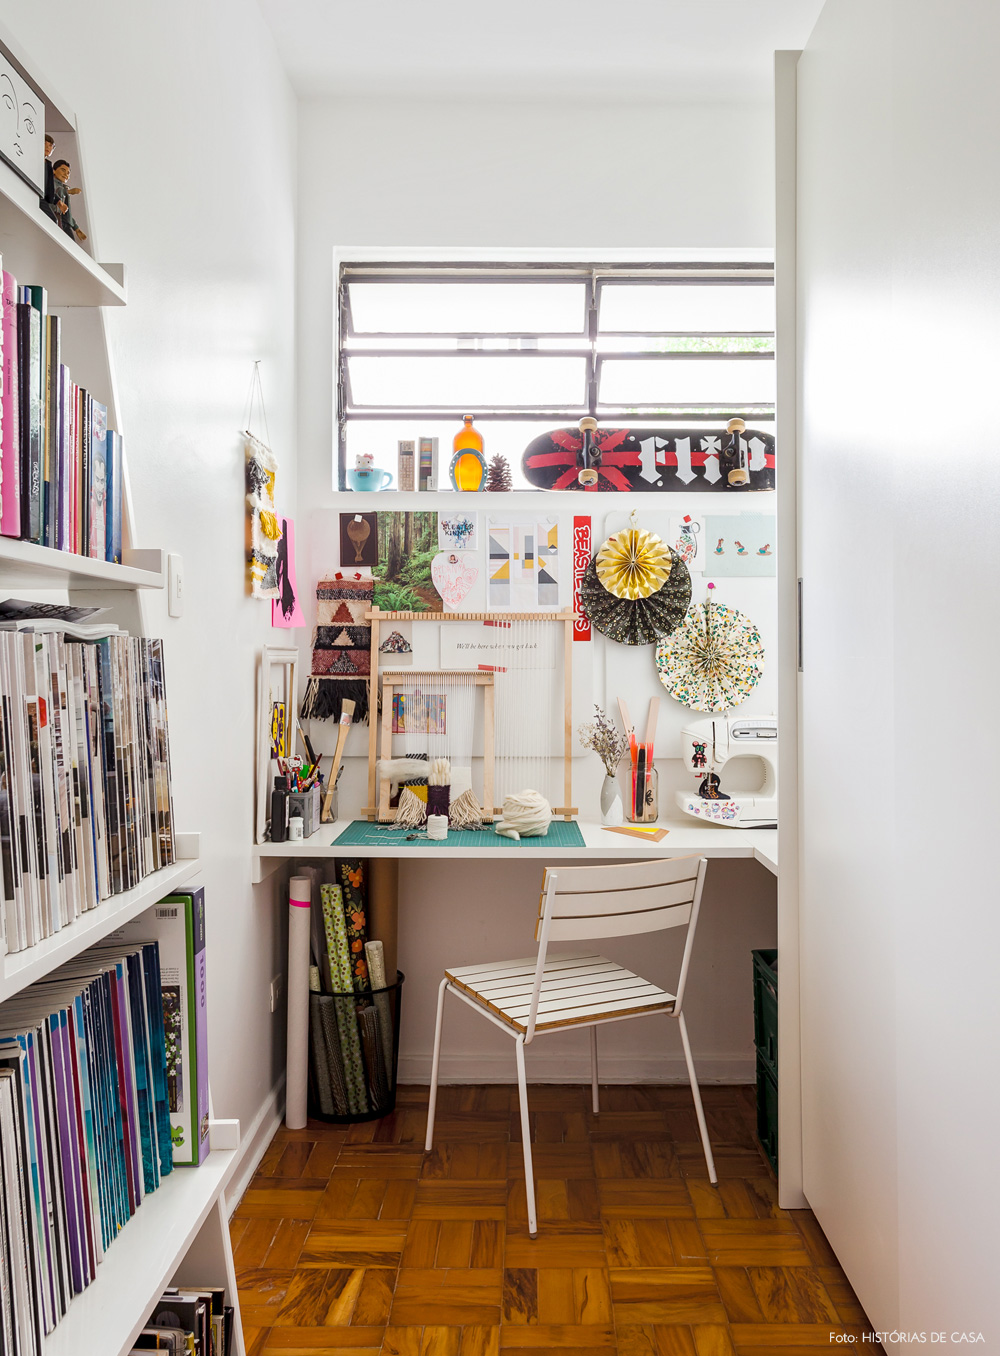 35-decoracao-atelie-craft-home-office-espaco-pequeno